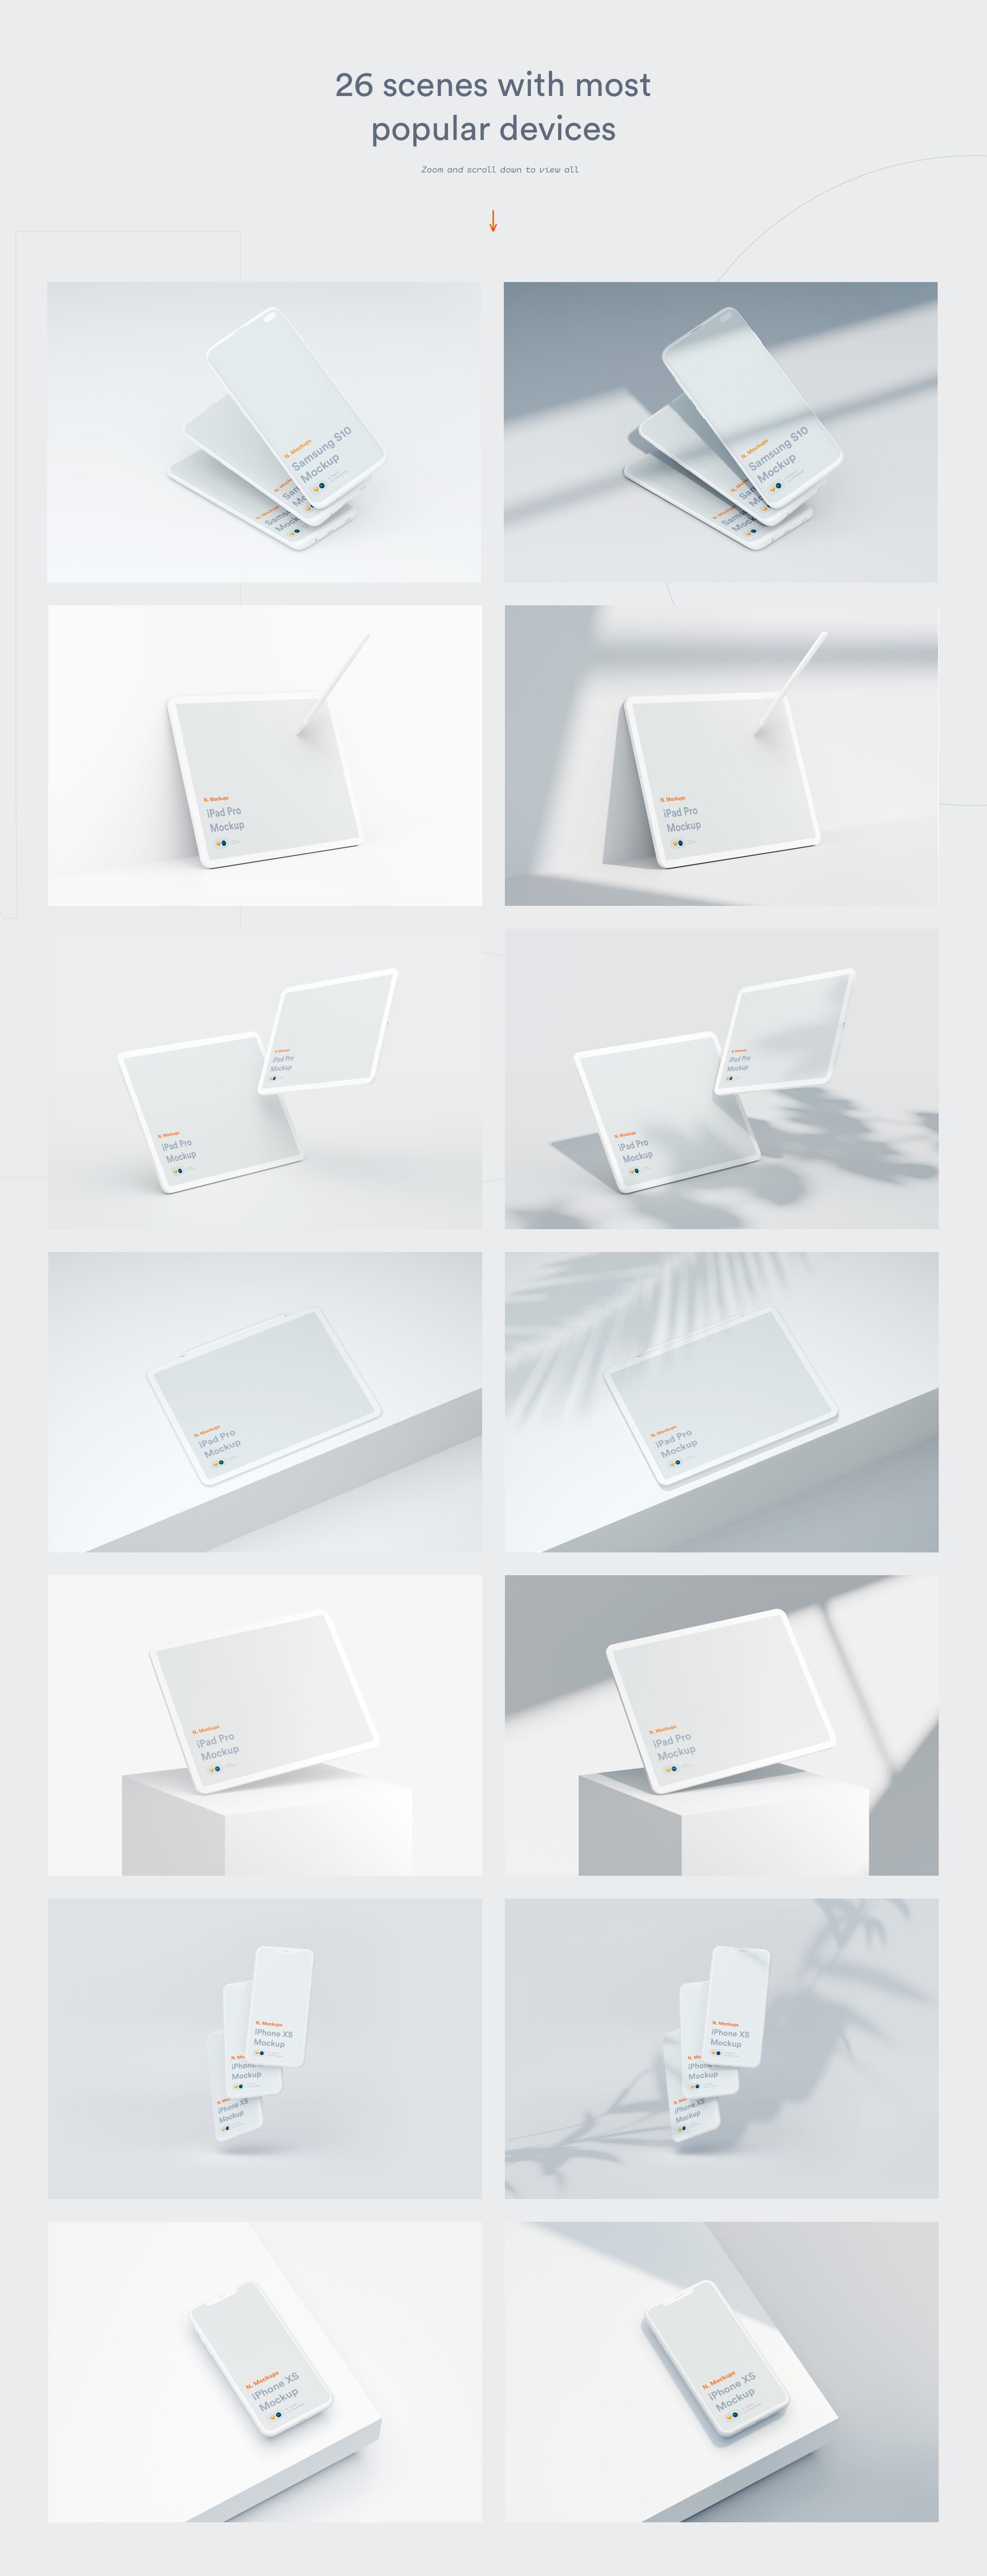 25款网站APP设计UI陶瓷苹果手机平板电脑设备屏幕演示样机模板素材套装